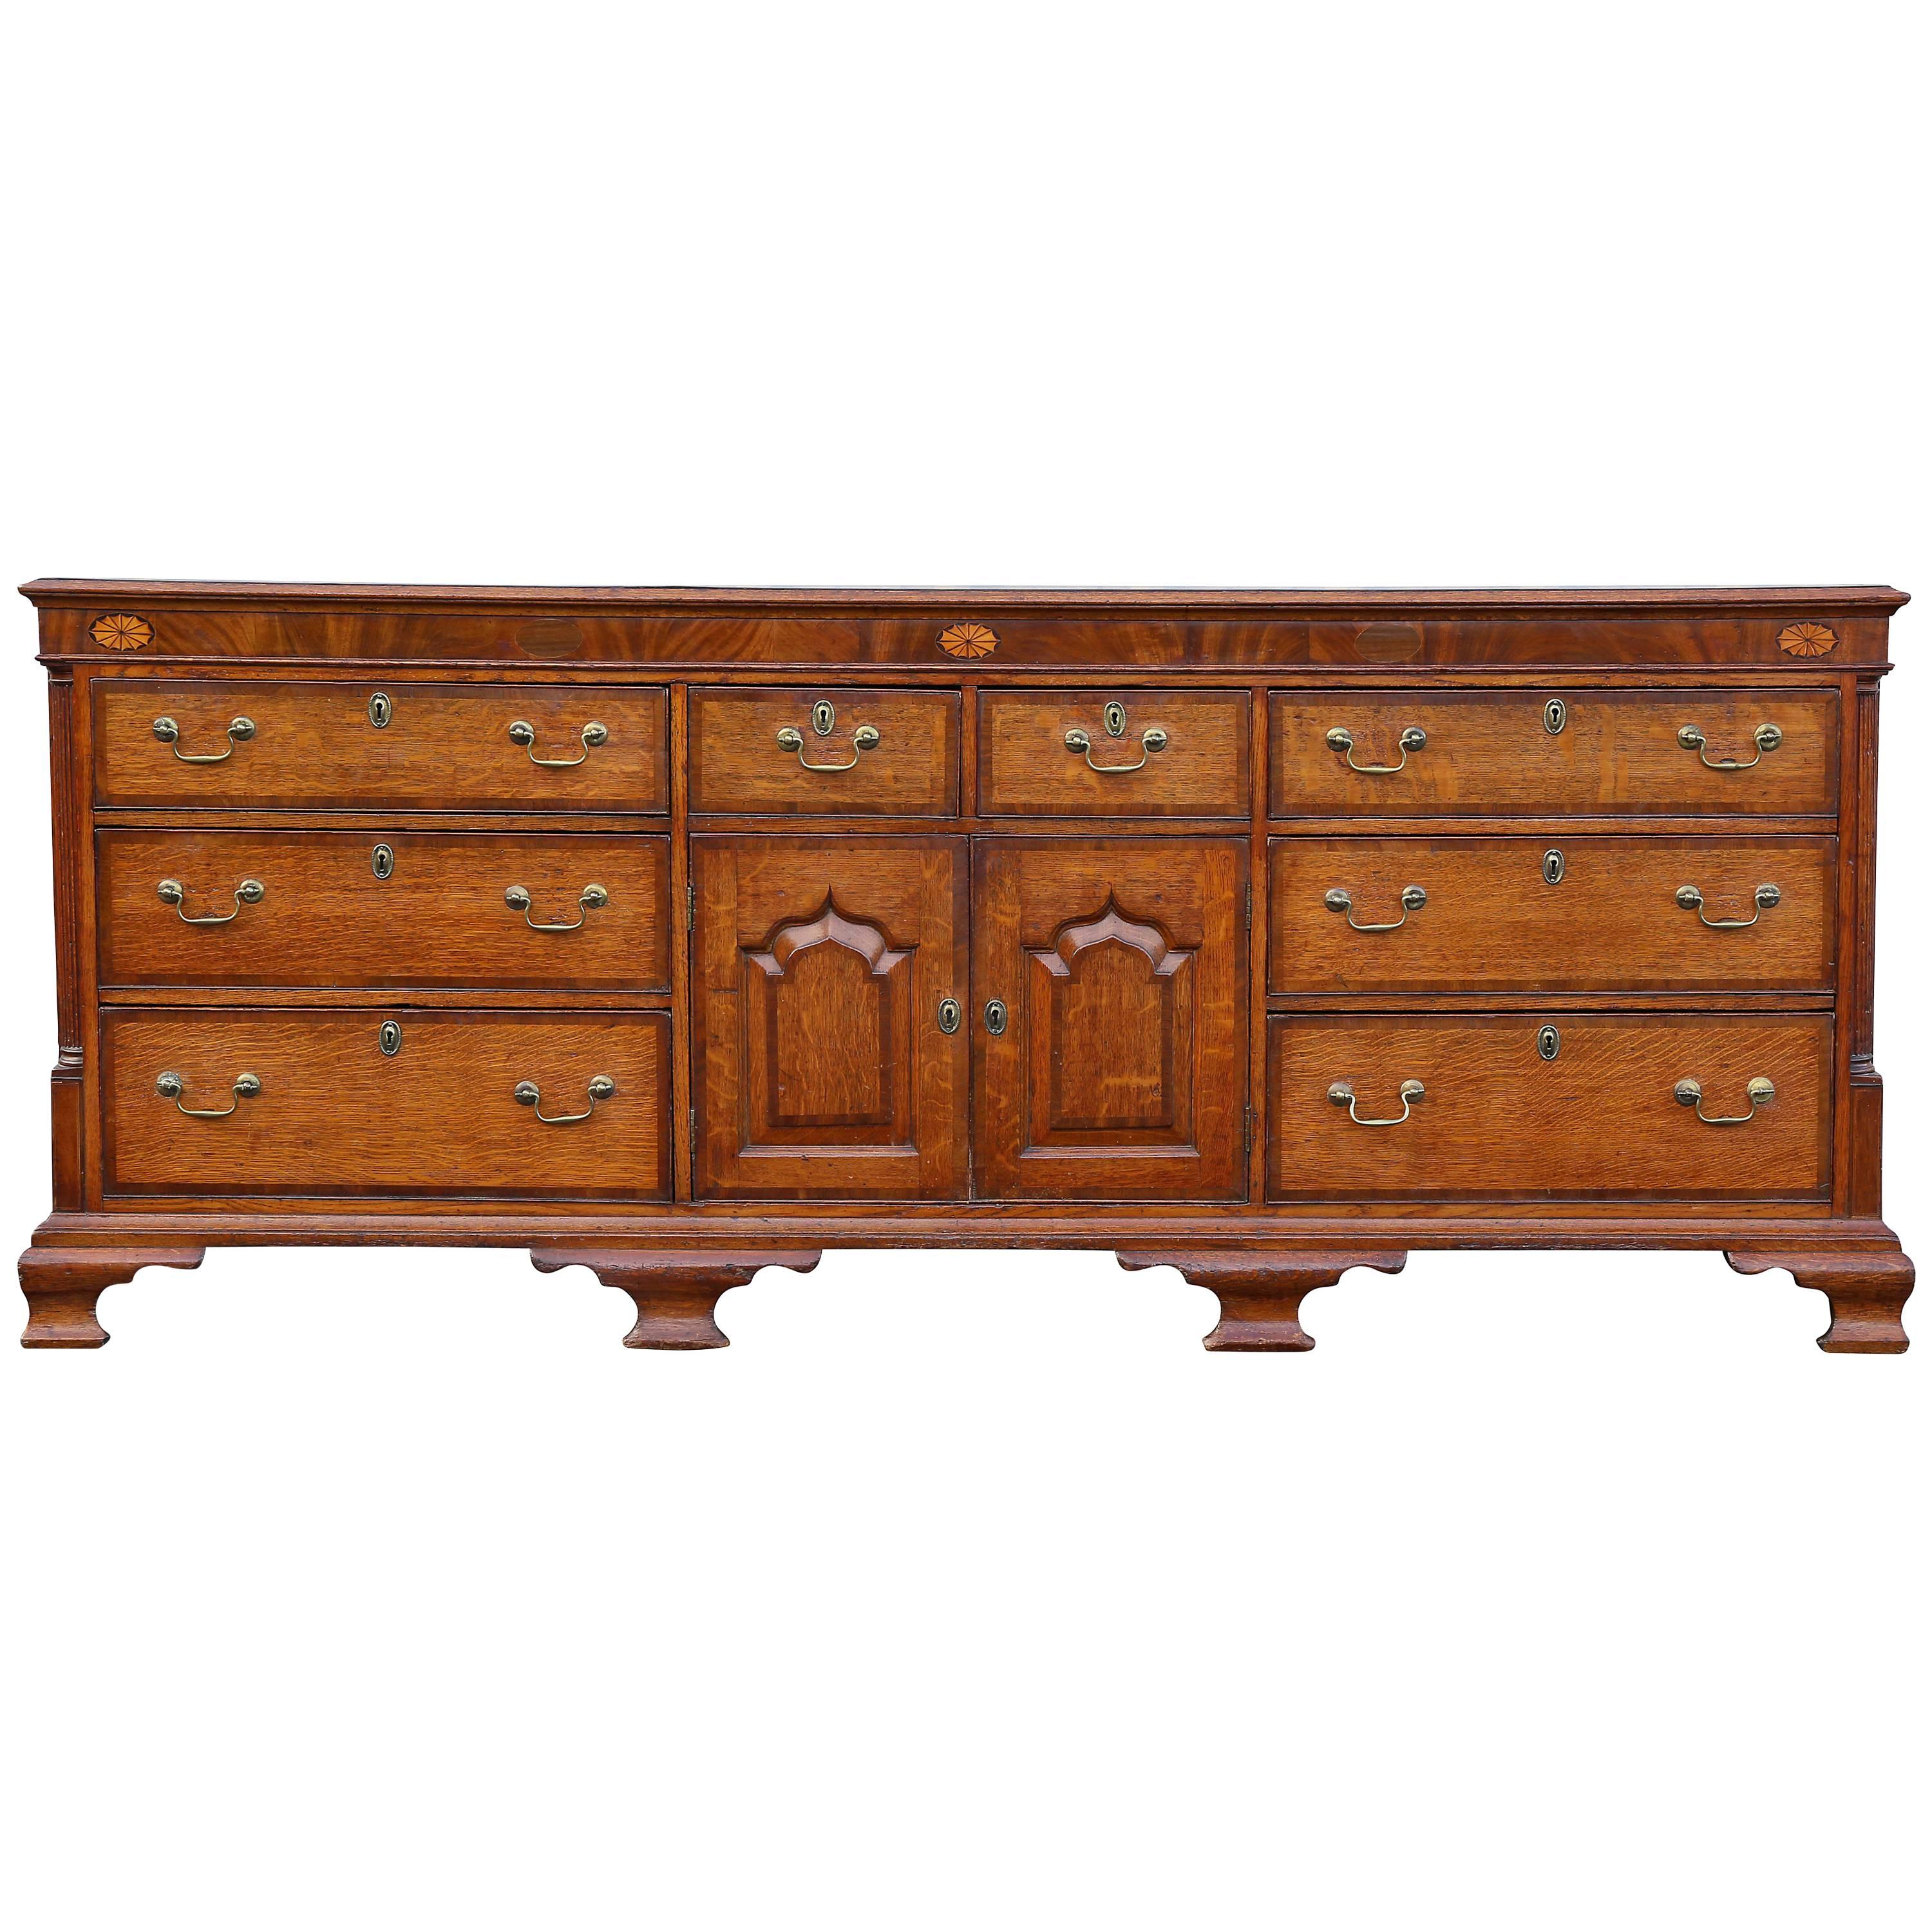 George III Oak and Mahogany Dresser or Sideboard